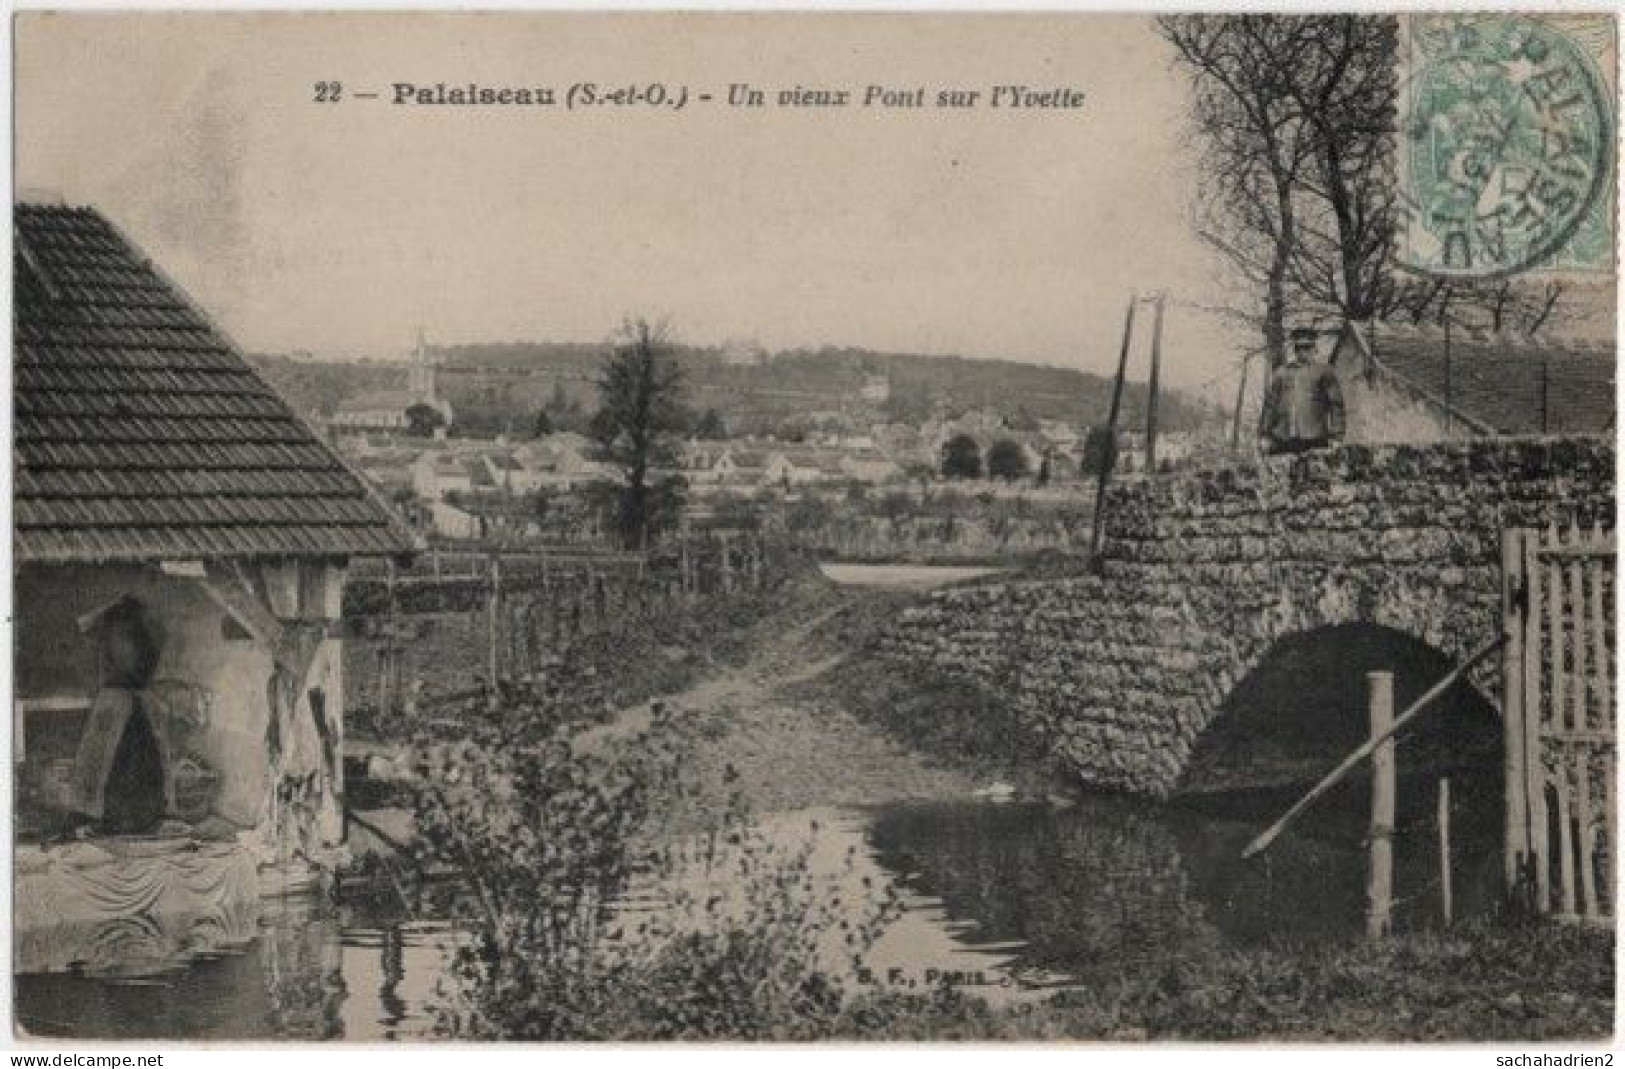 91. PALAISEAU. Un Vieux Pont Sur L'Yvette. 22 - Palaiseau